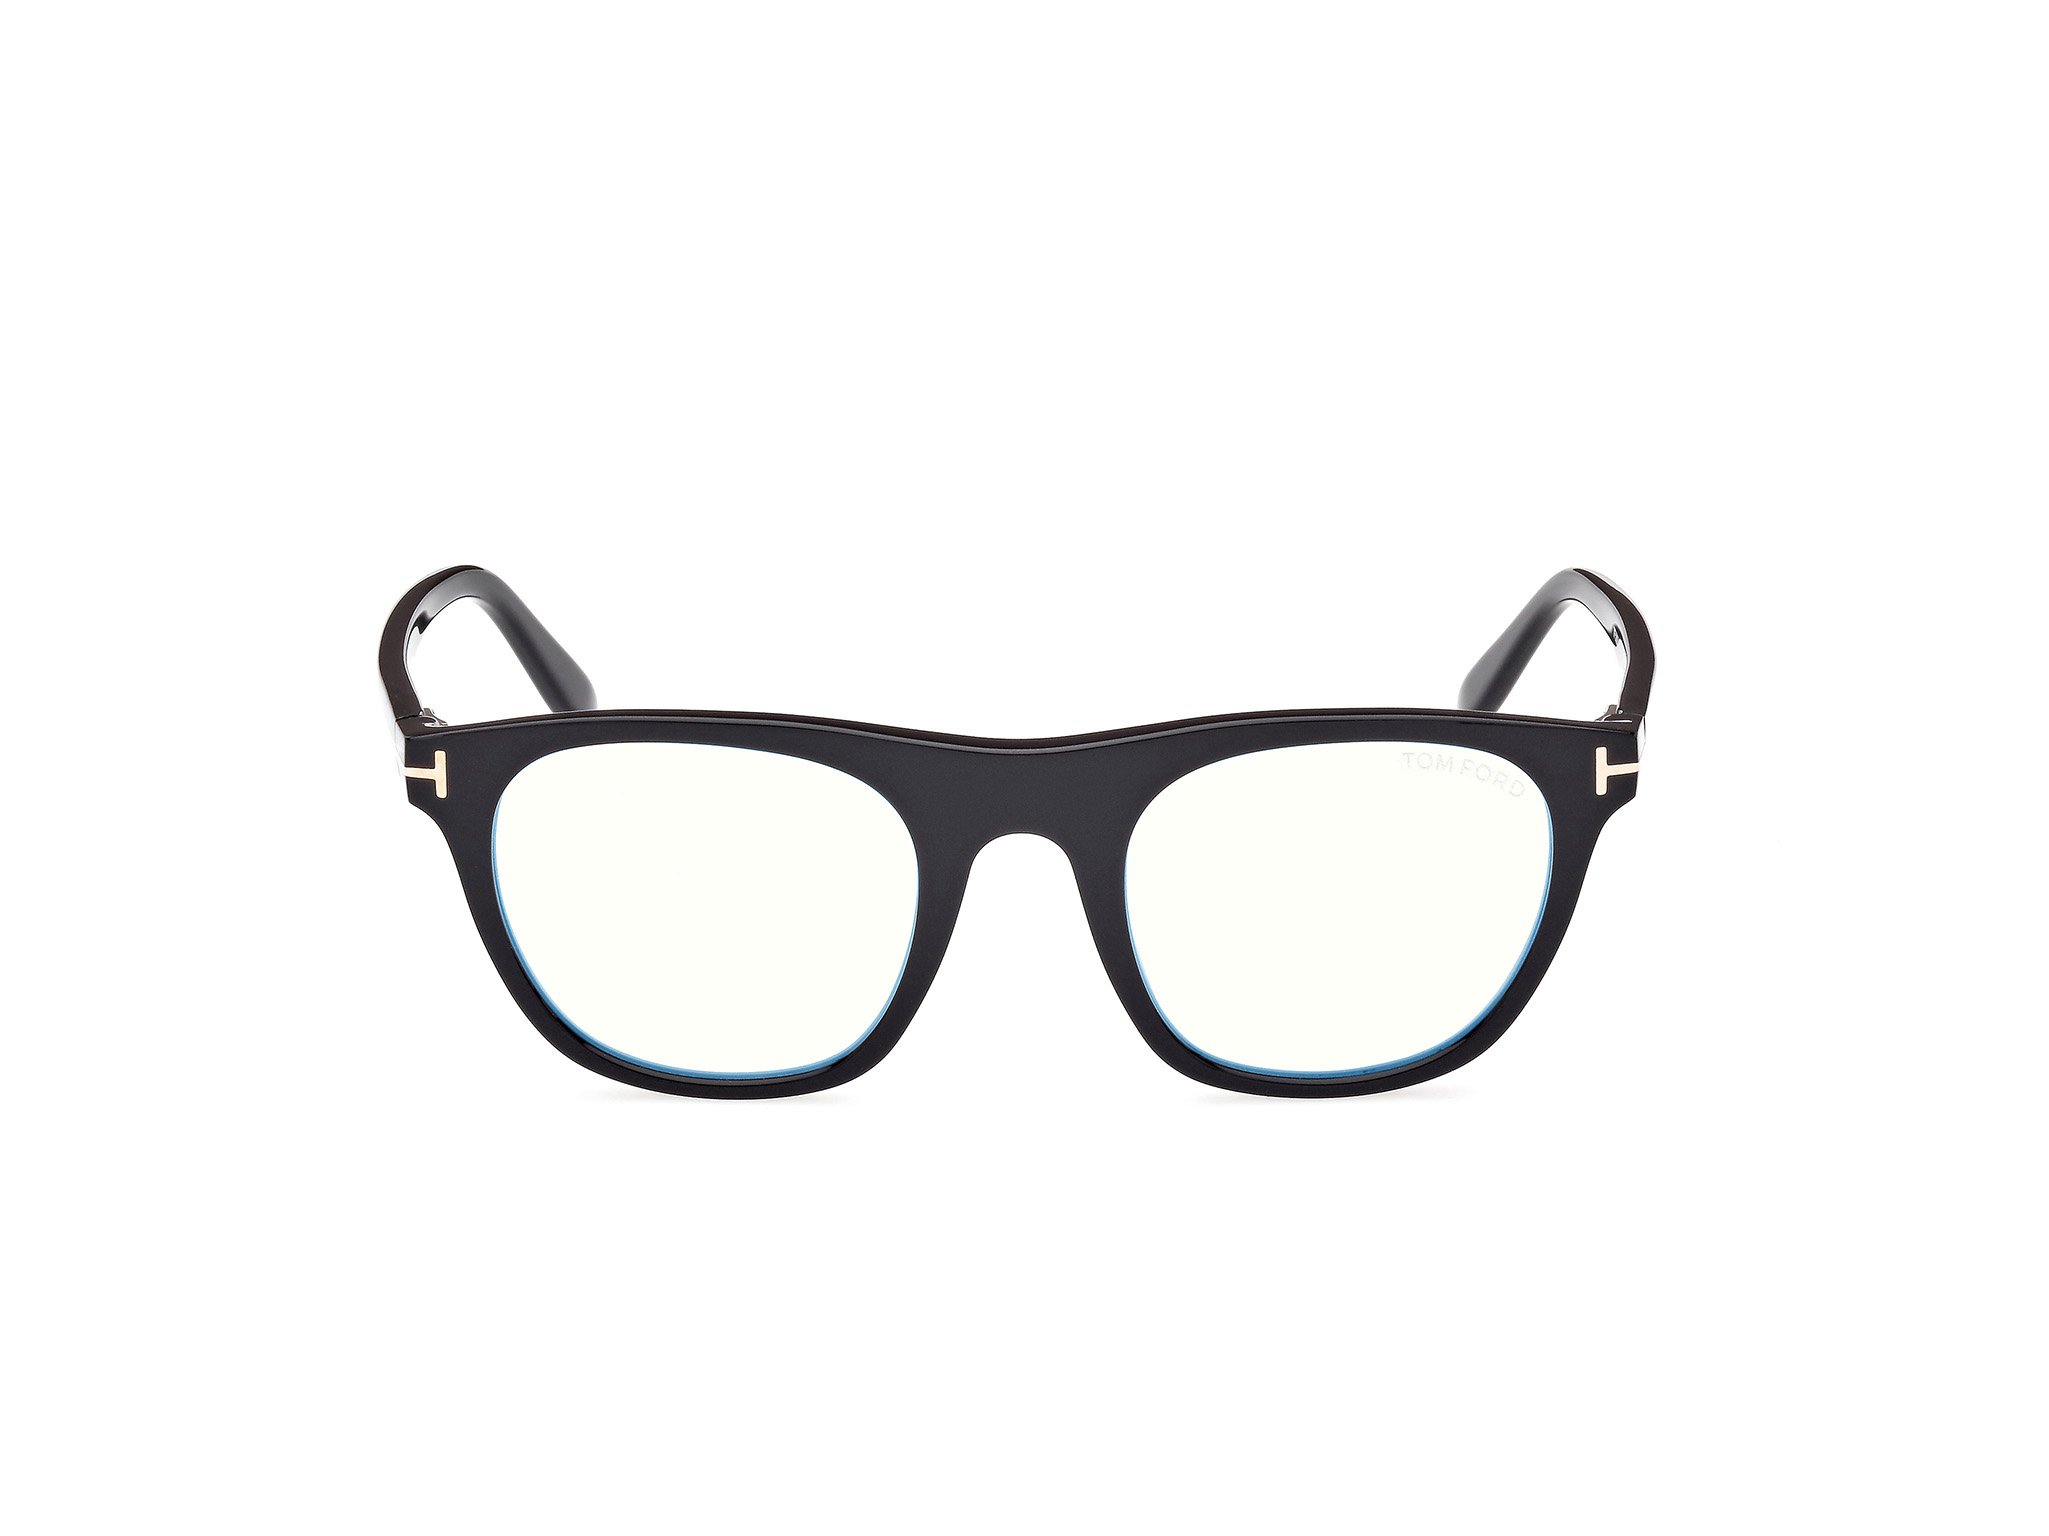 Das Bild zeigt die Korrektionsbrille FT5895-B 001 von der Marke Tom Ford in schwarz.